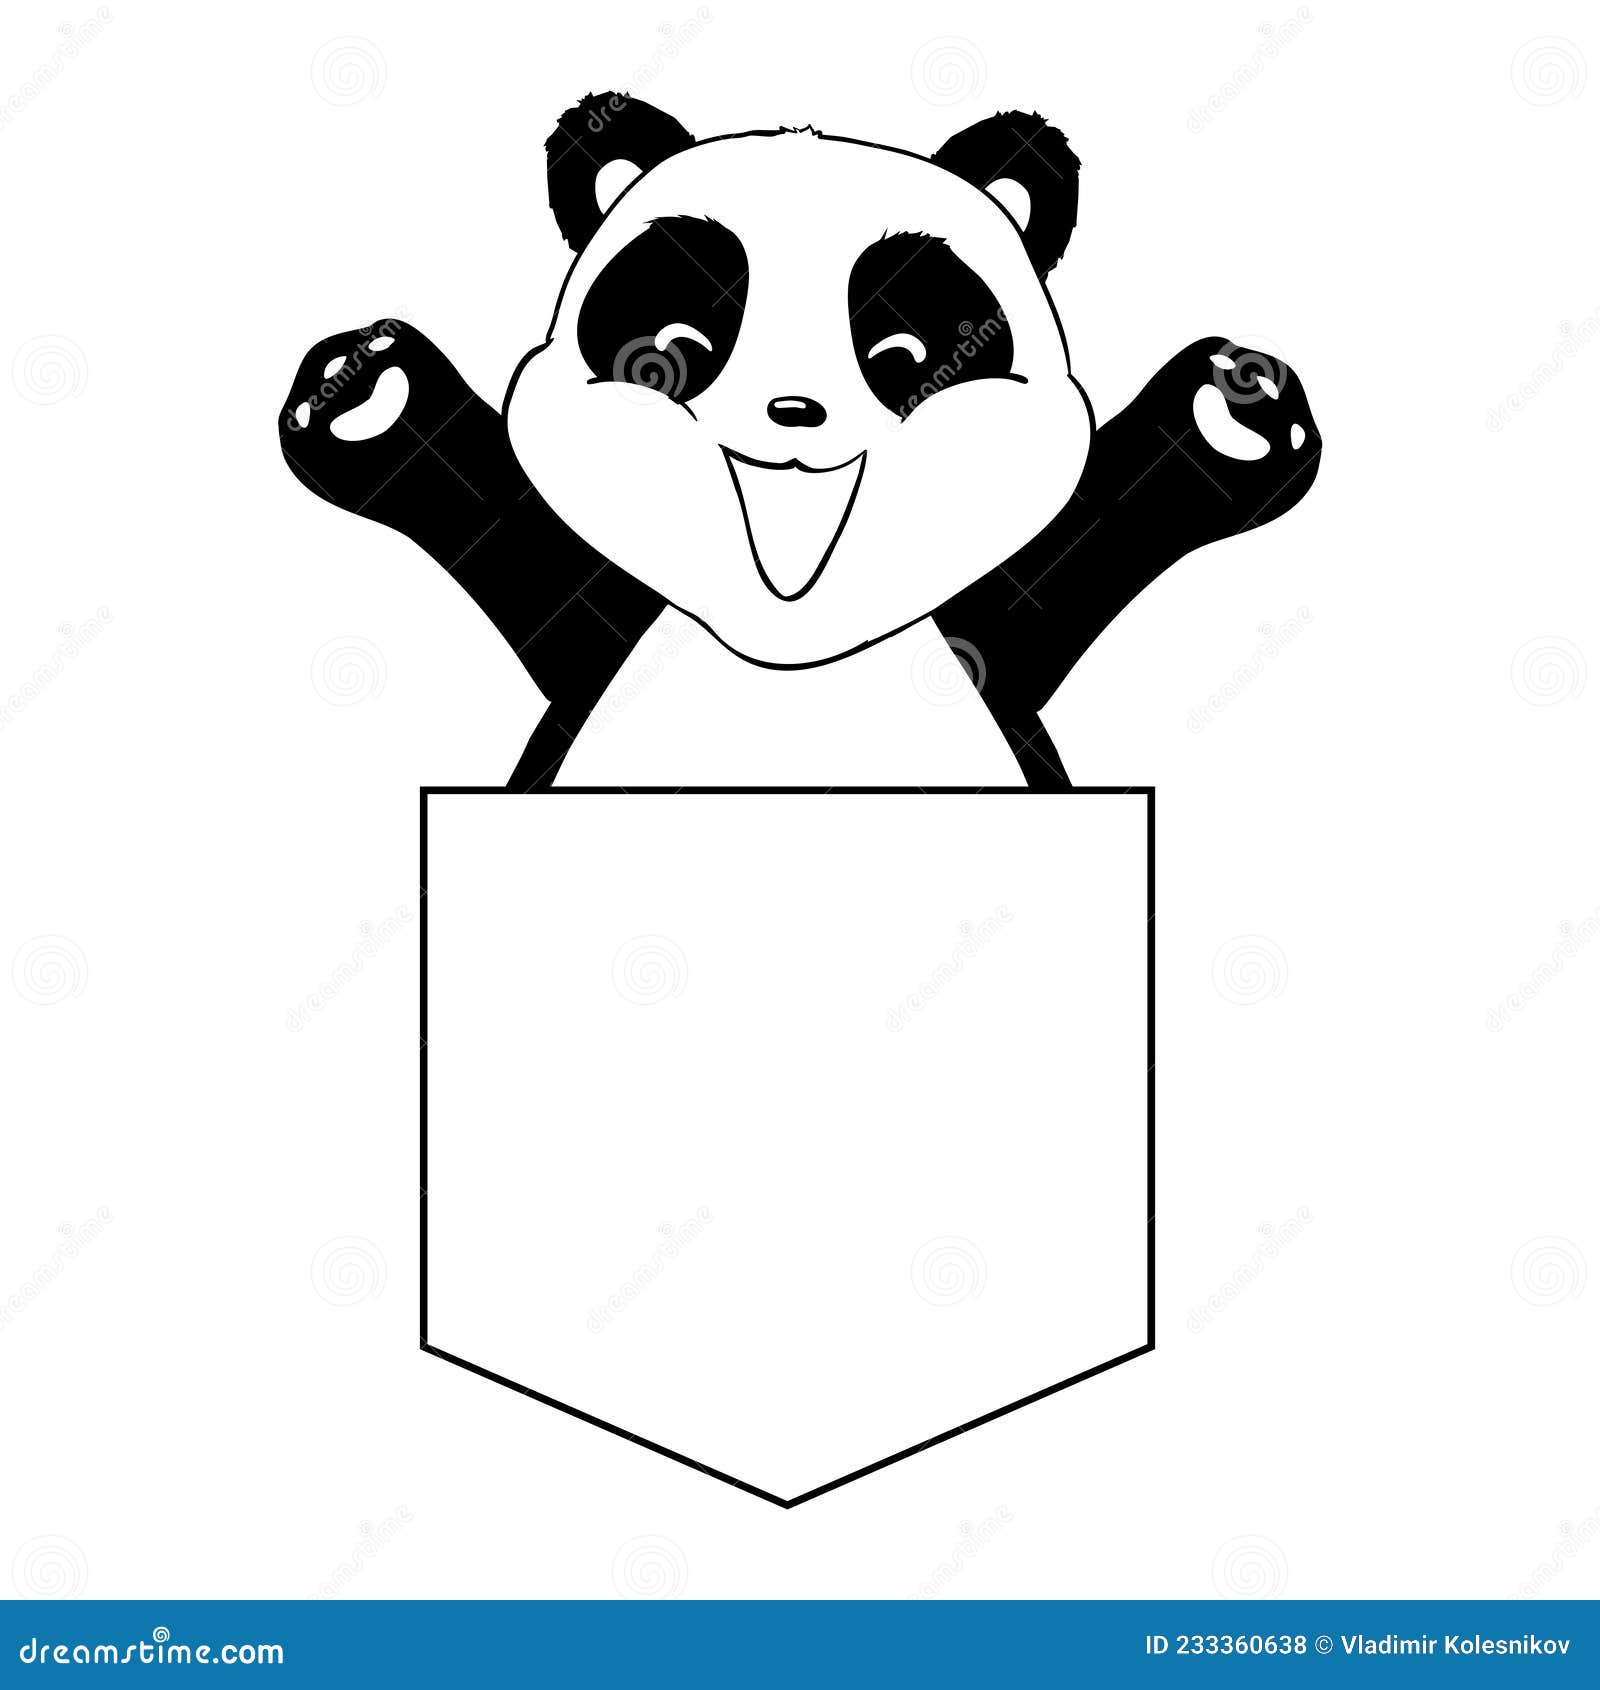 Em uma estilização de fundo branco de um pequeno panda desenho